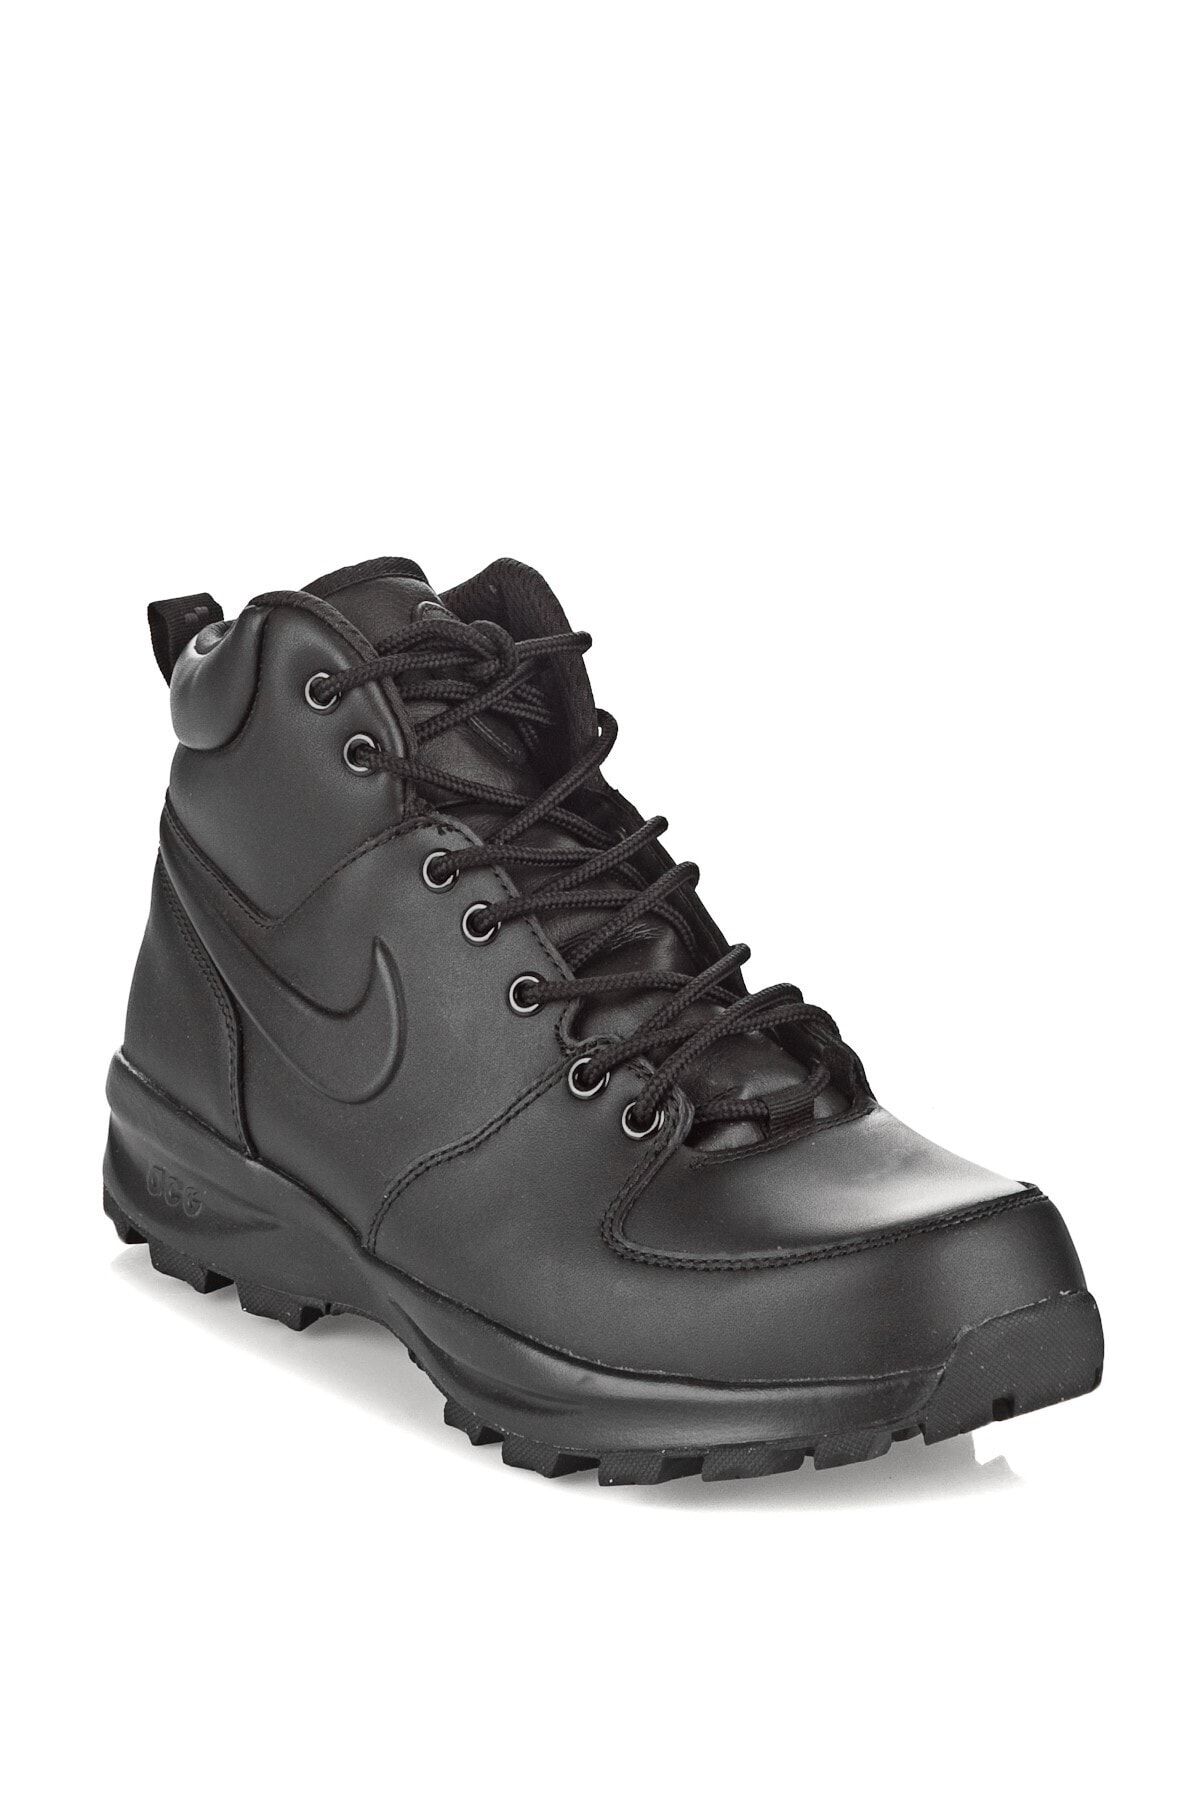 Nike Manoa Leather Erkek Bot Siyah Yorumları, Fiyatı -